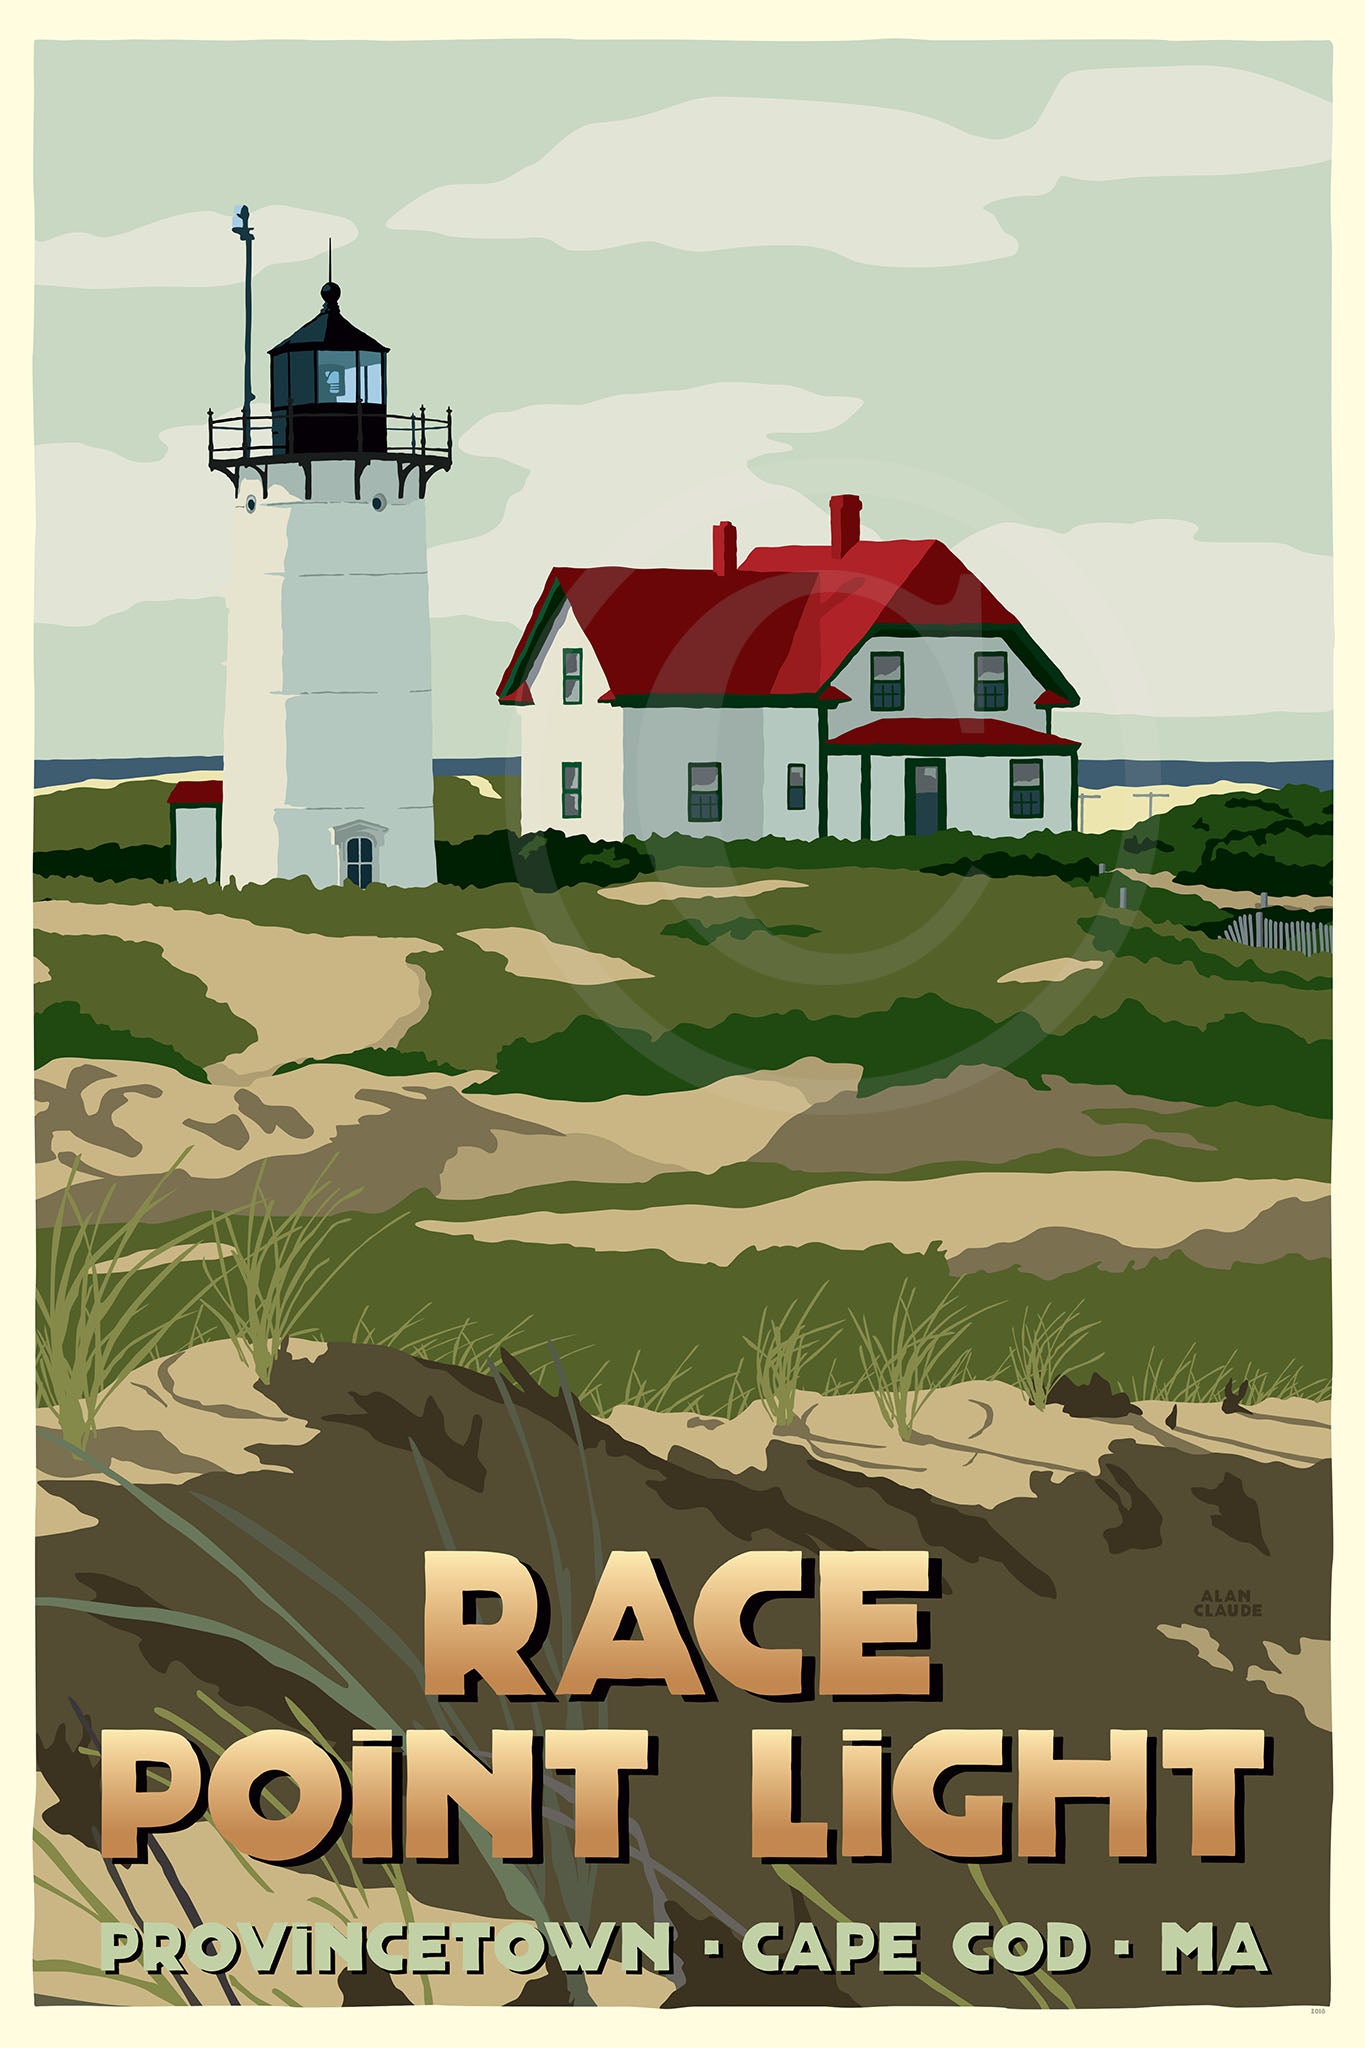 Race Point Light Art Print 36" x 53" Travel Poster By Alan Claude - Massachusetts